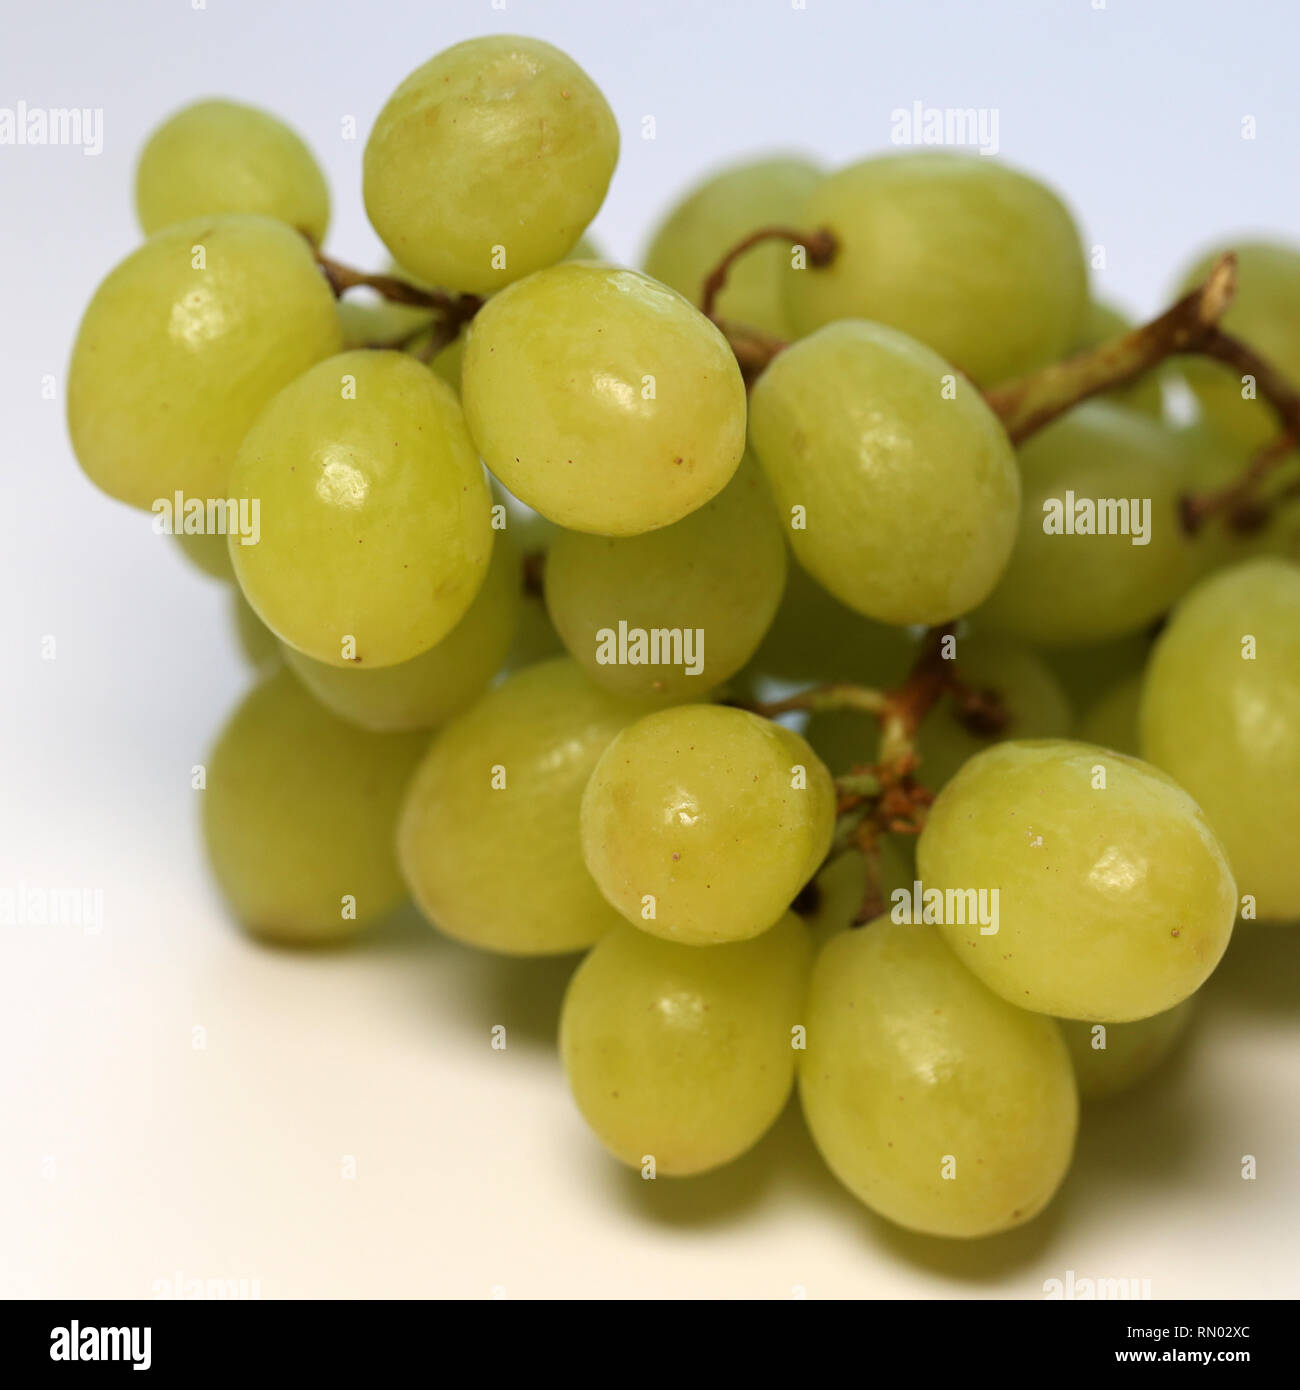 Maduras y jugosas uvas verdes fotografiada en una tabla. Imagen en color de uvas deliciosas y saludables. Closeup tomada con una lente macro. Foto de stock